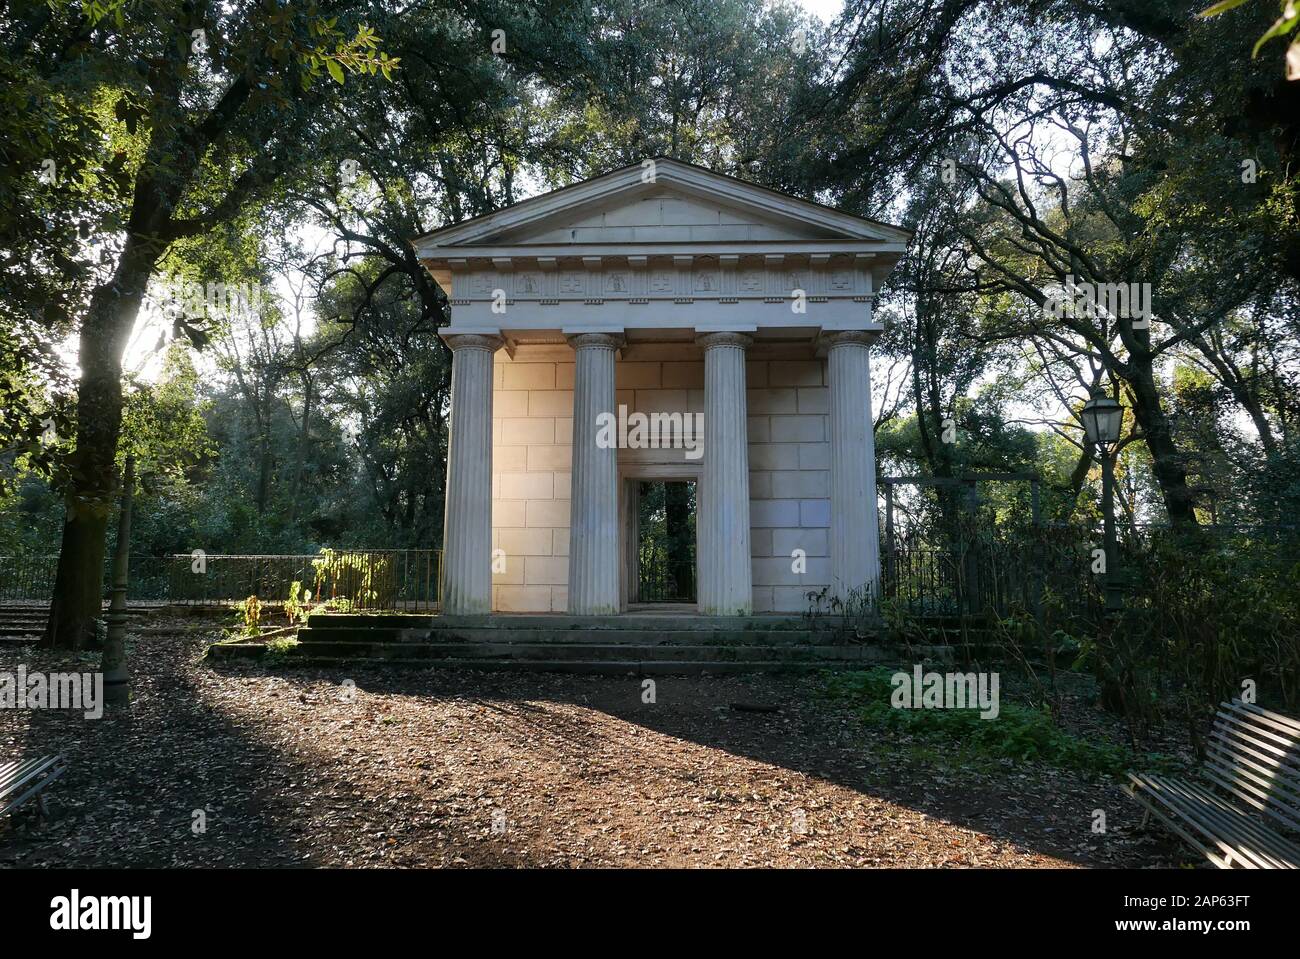 Tempio di Flora in Villa Ada public Park in Rome, Italy Stock Photo